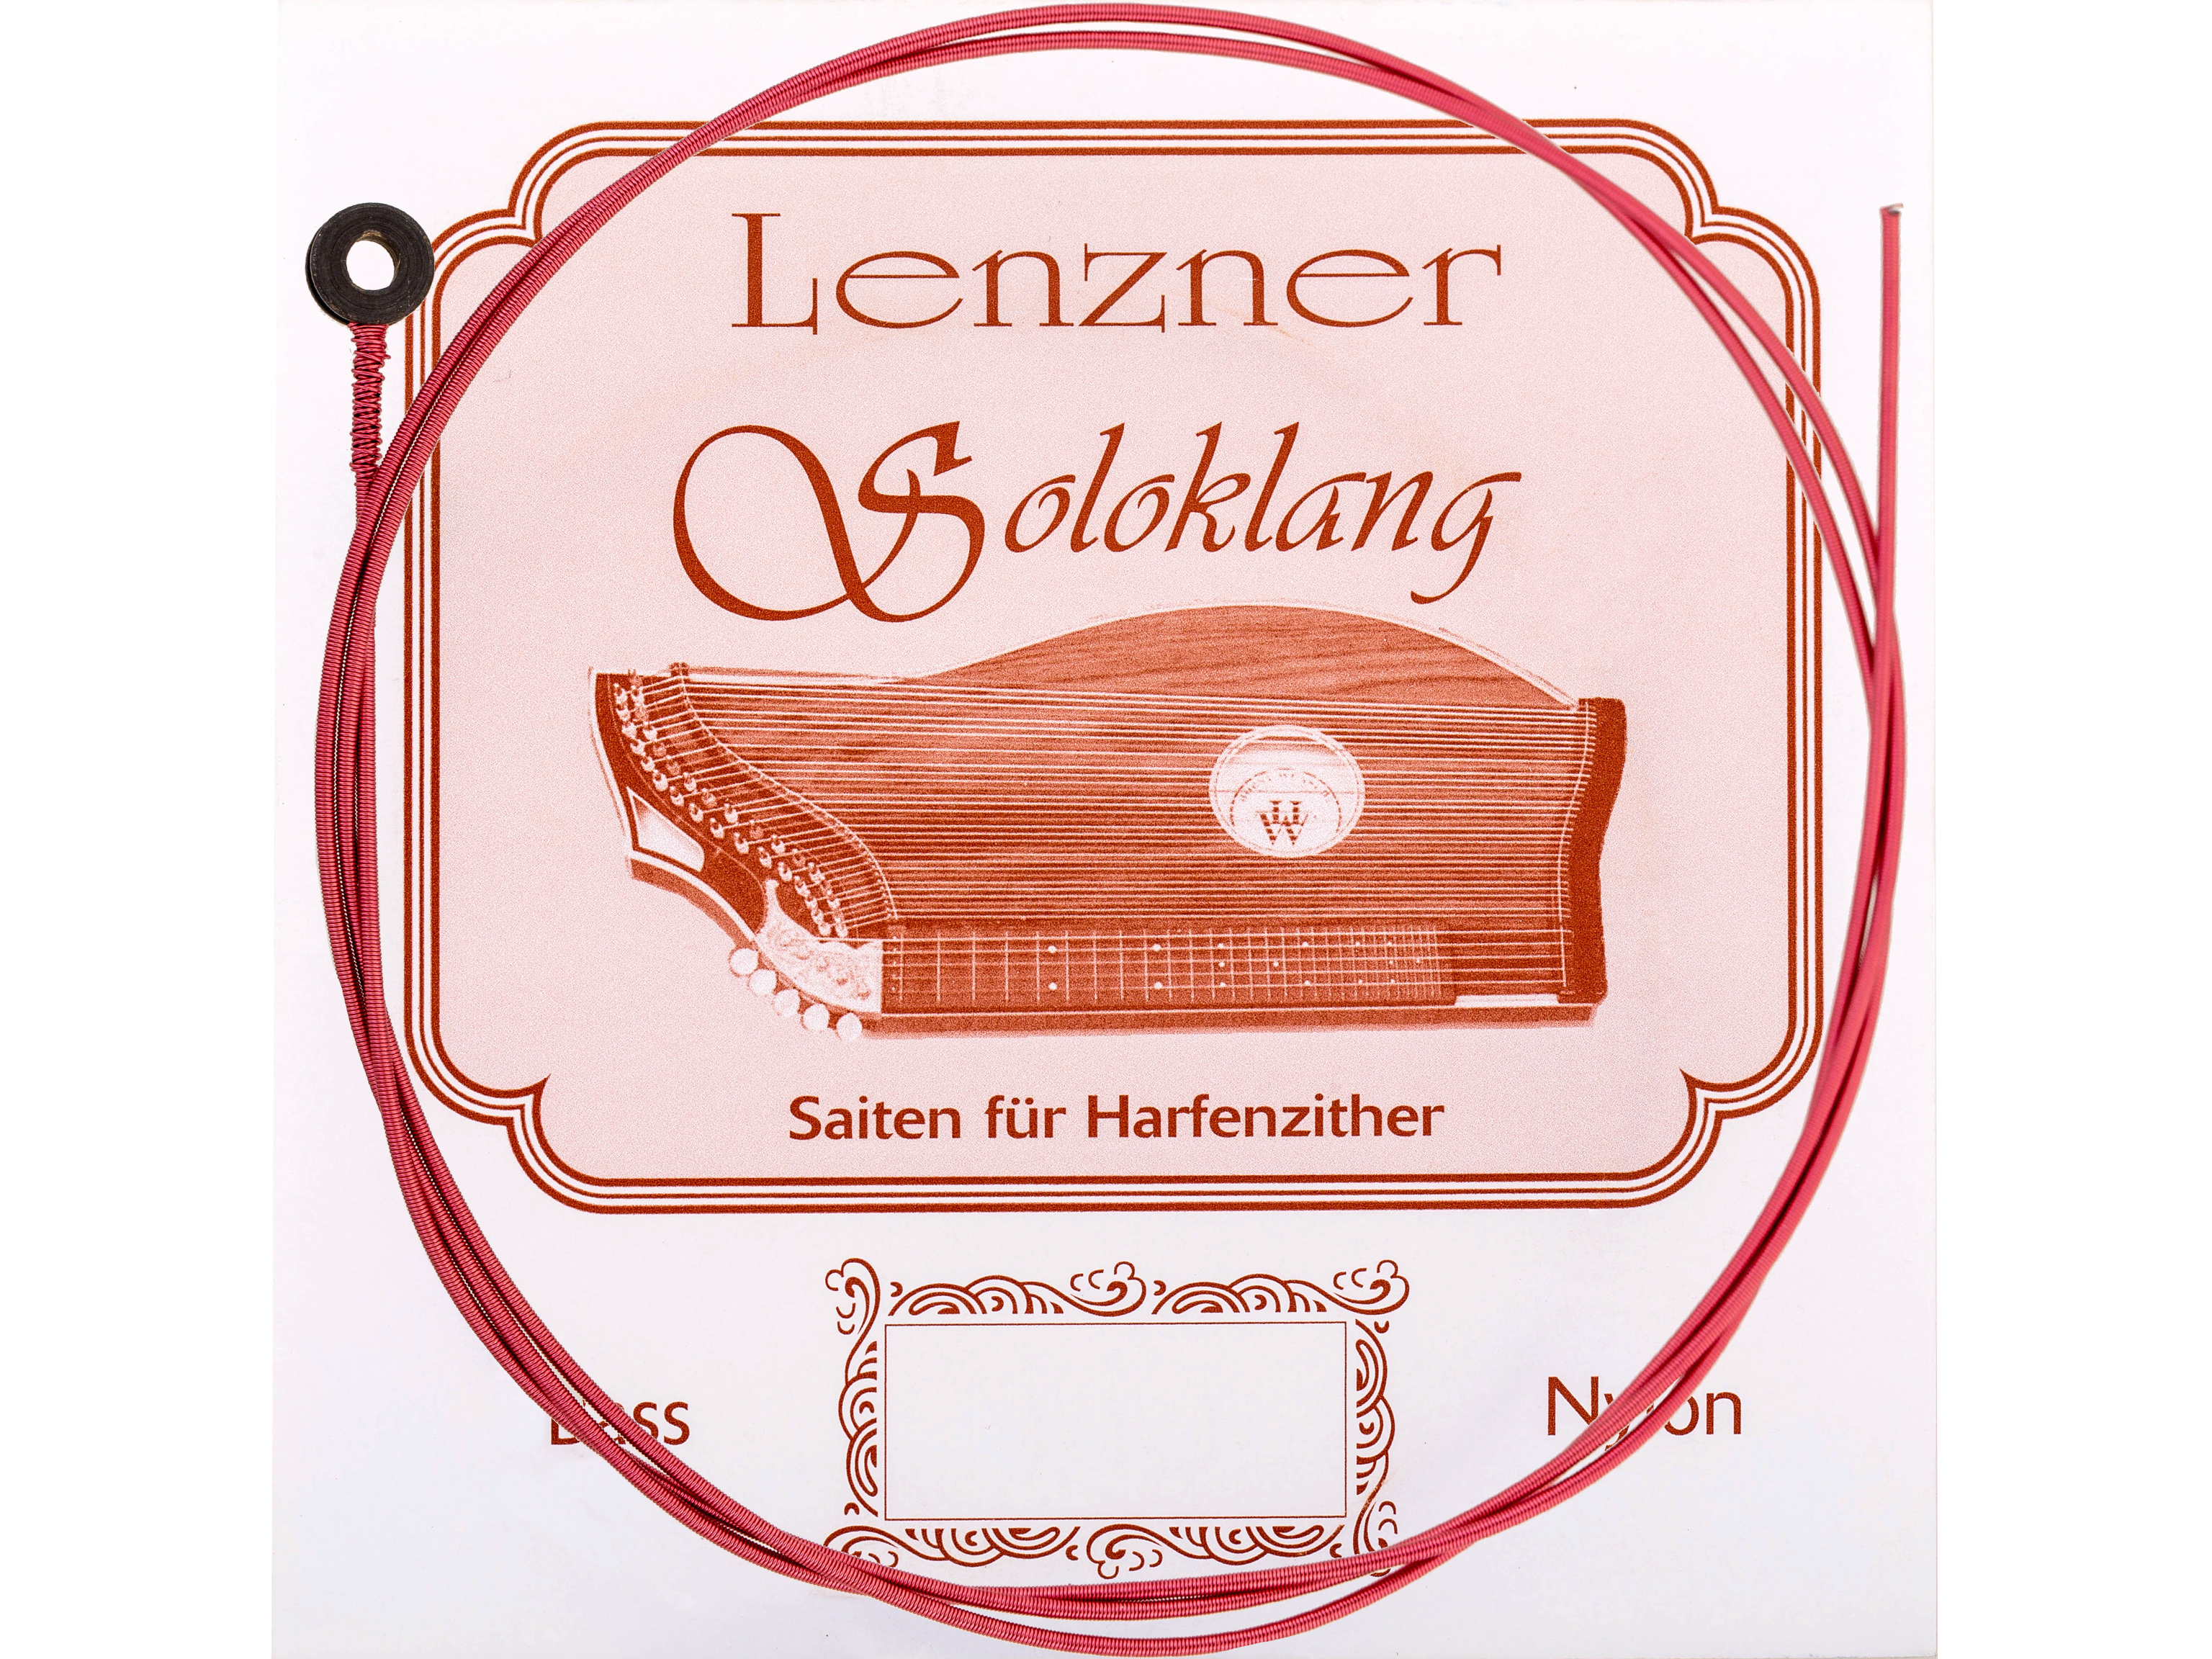 Lenzner D 18.Zithersaite Soloklang Bass